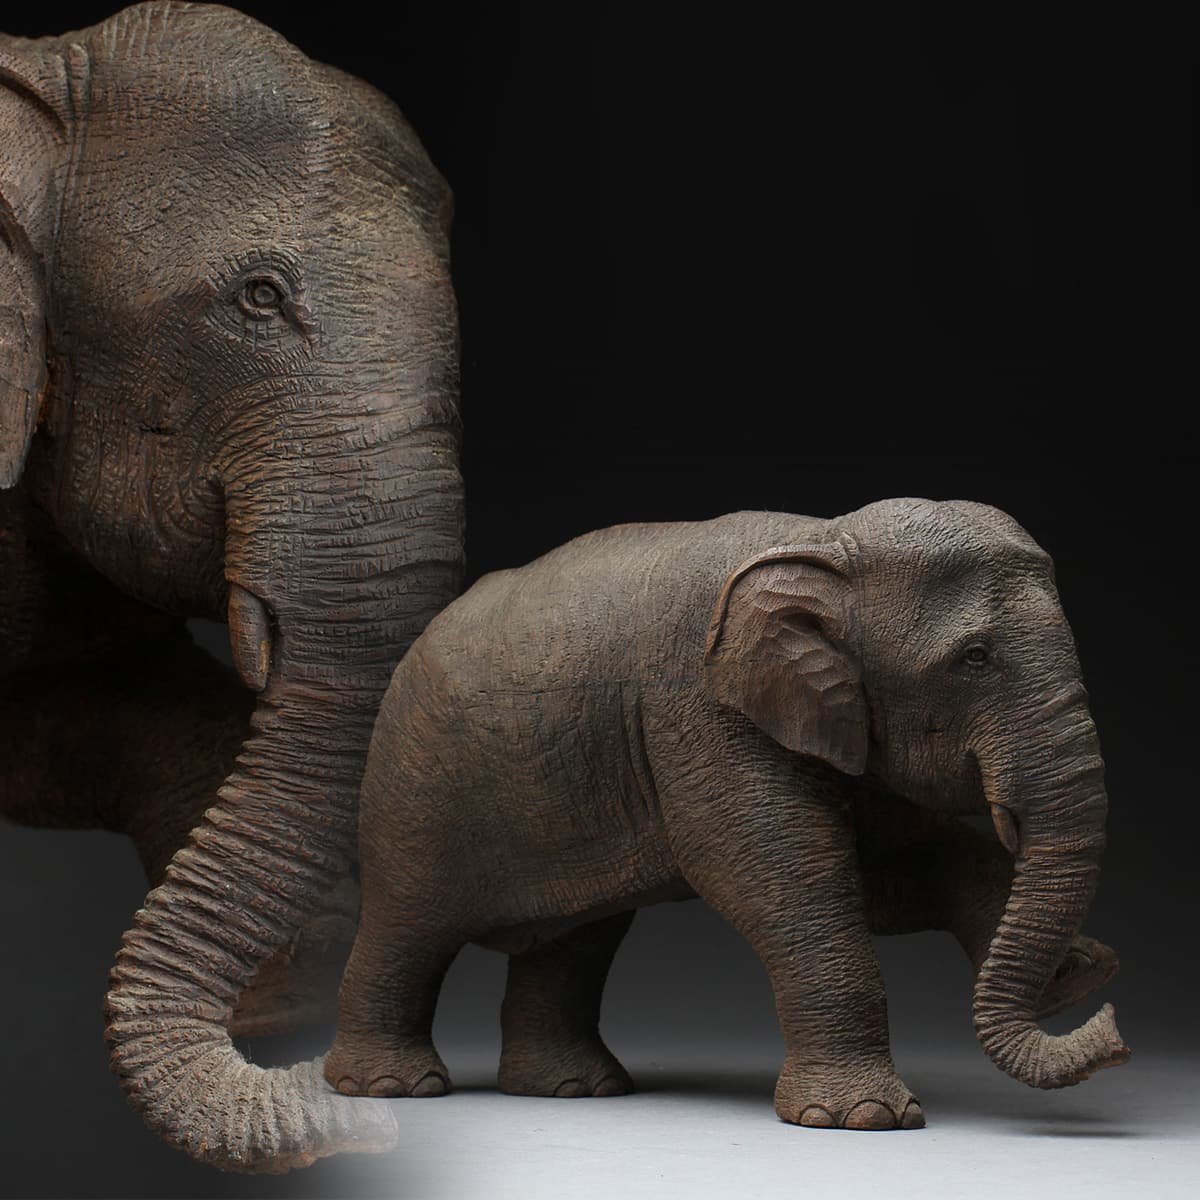 ED370 時代物 在銘 精巧細工 木彫 象 高17cm 重1.1kg 木造象 木雕大象 